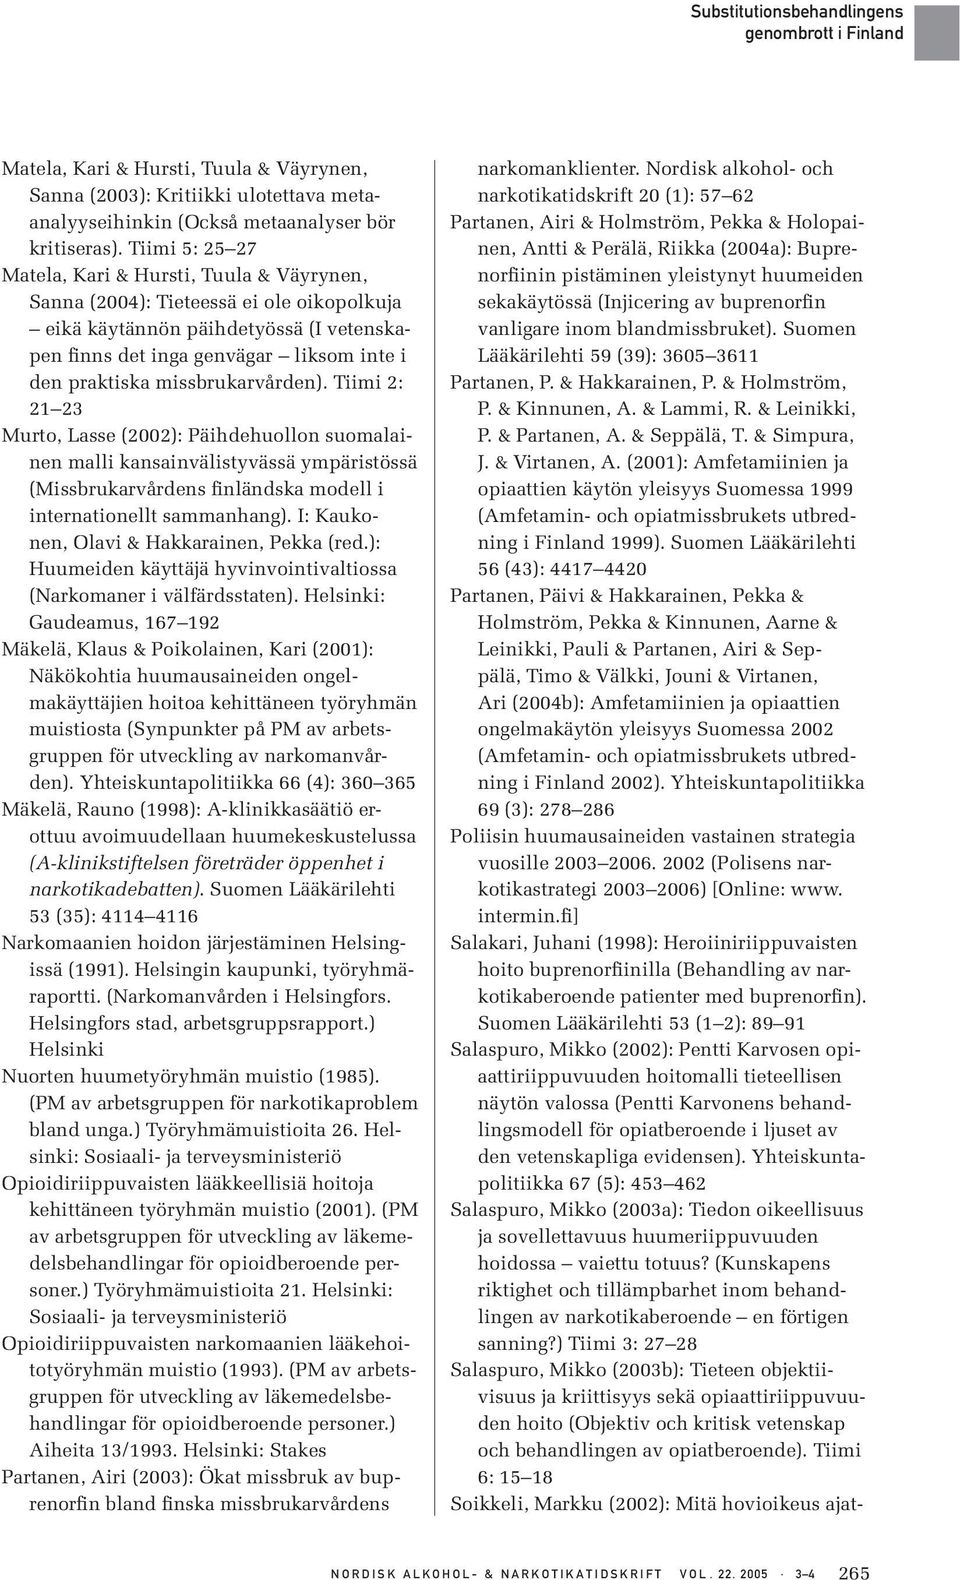 missbrukarvården). Tiimi 2: 21 23 Murto, Lasse (2002): Päihdehuollon suomalainen malli kansainvälistyvässä ympäristössä (Missbrukarvårdens finländska modell i internationellt sammanhang).